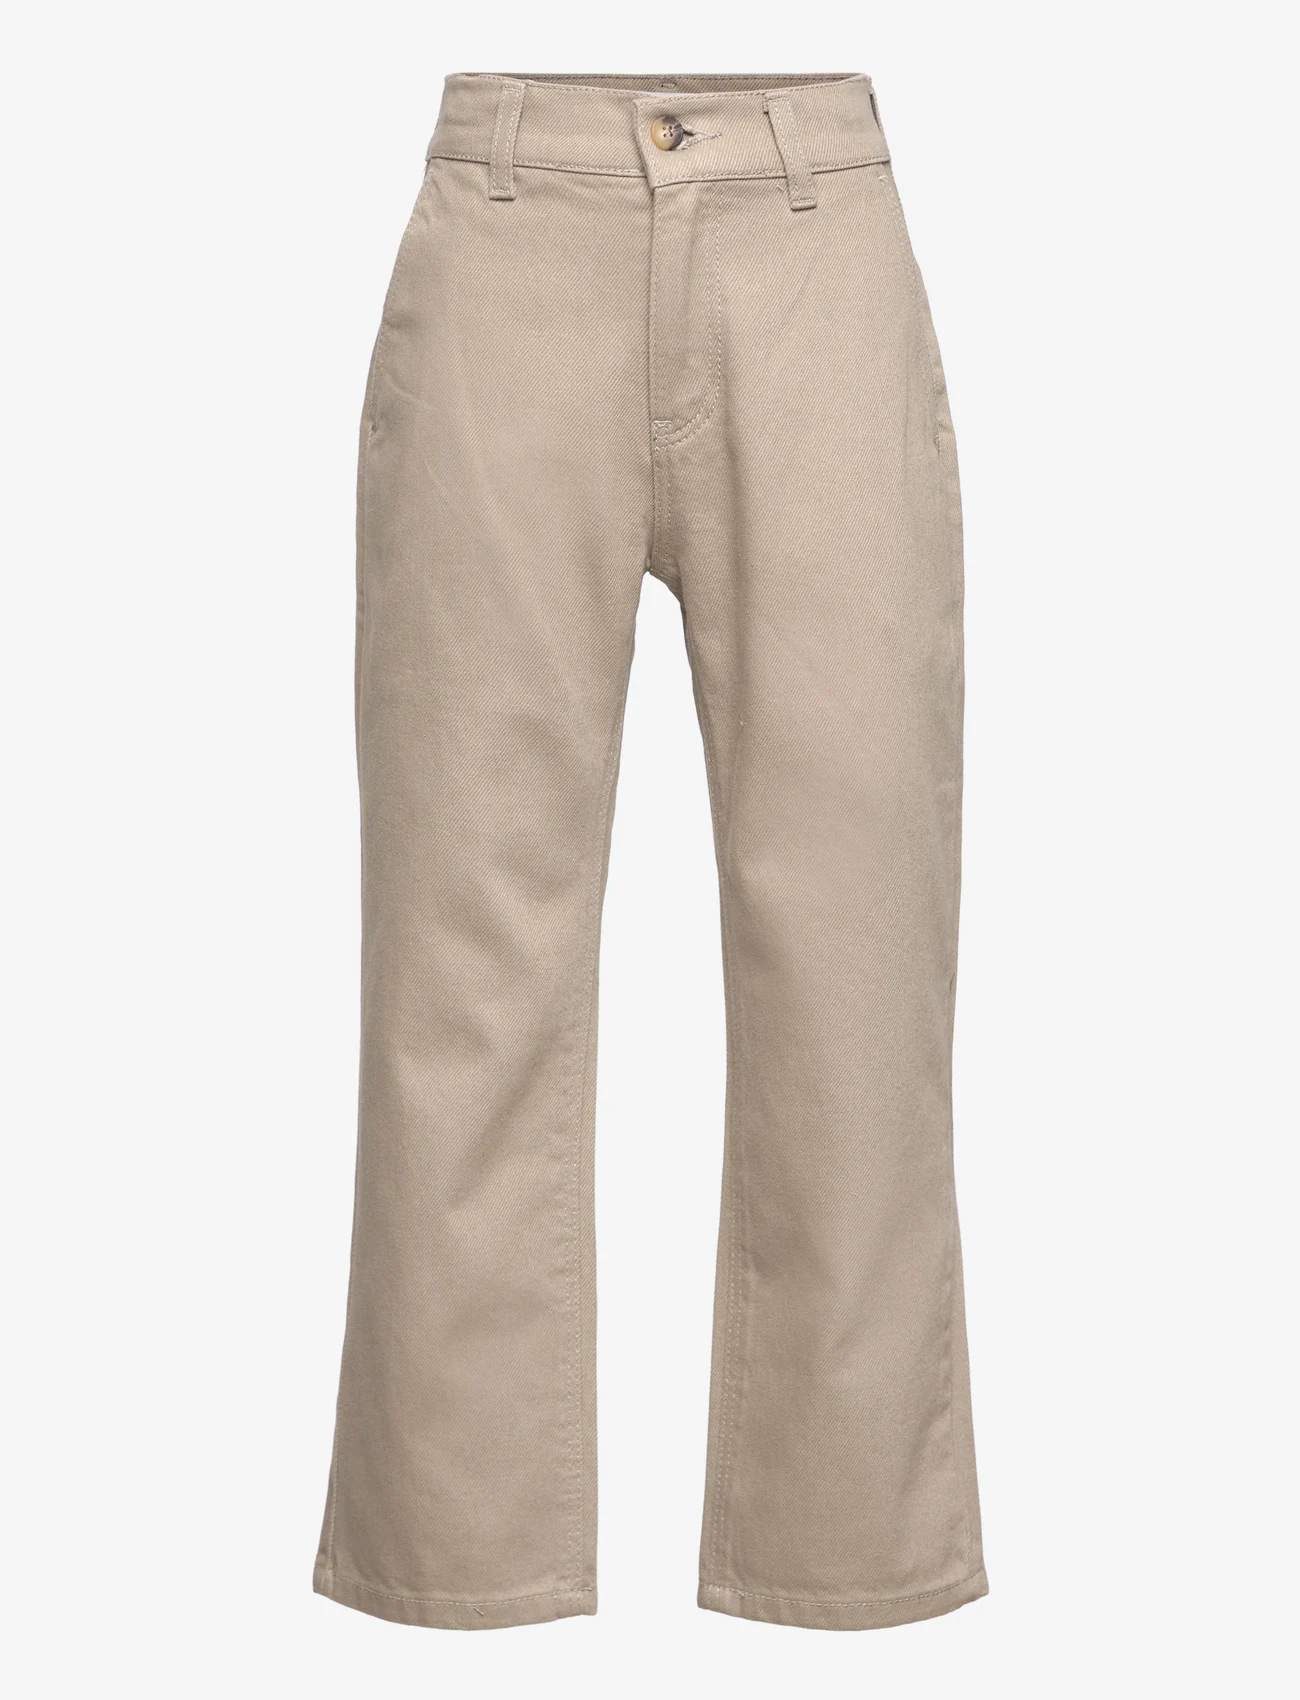 Grunt - Ace Beige Jeans - laia säärega teksad - beige - 0